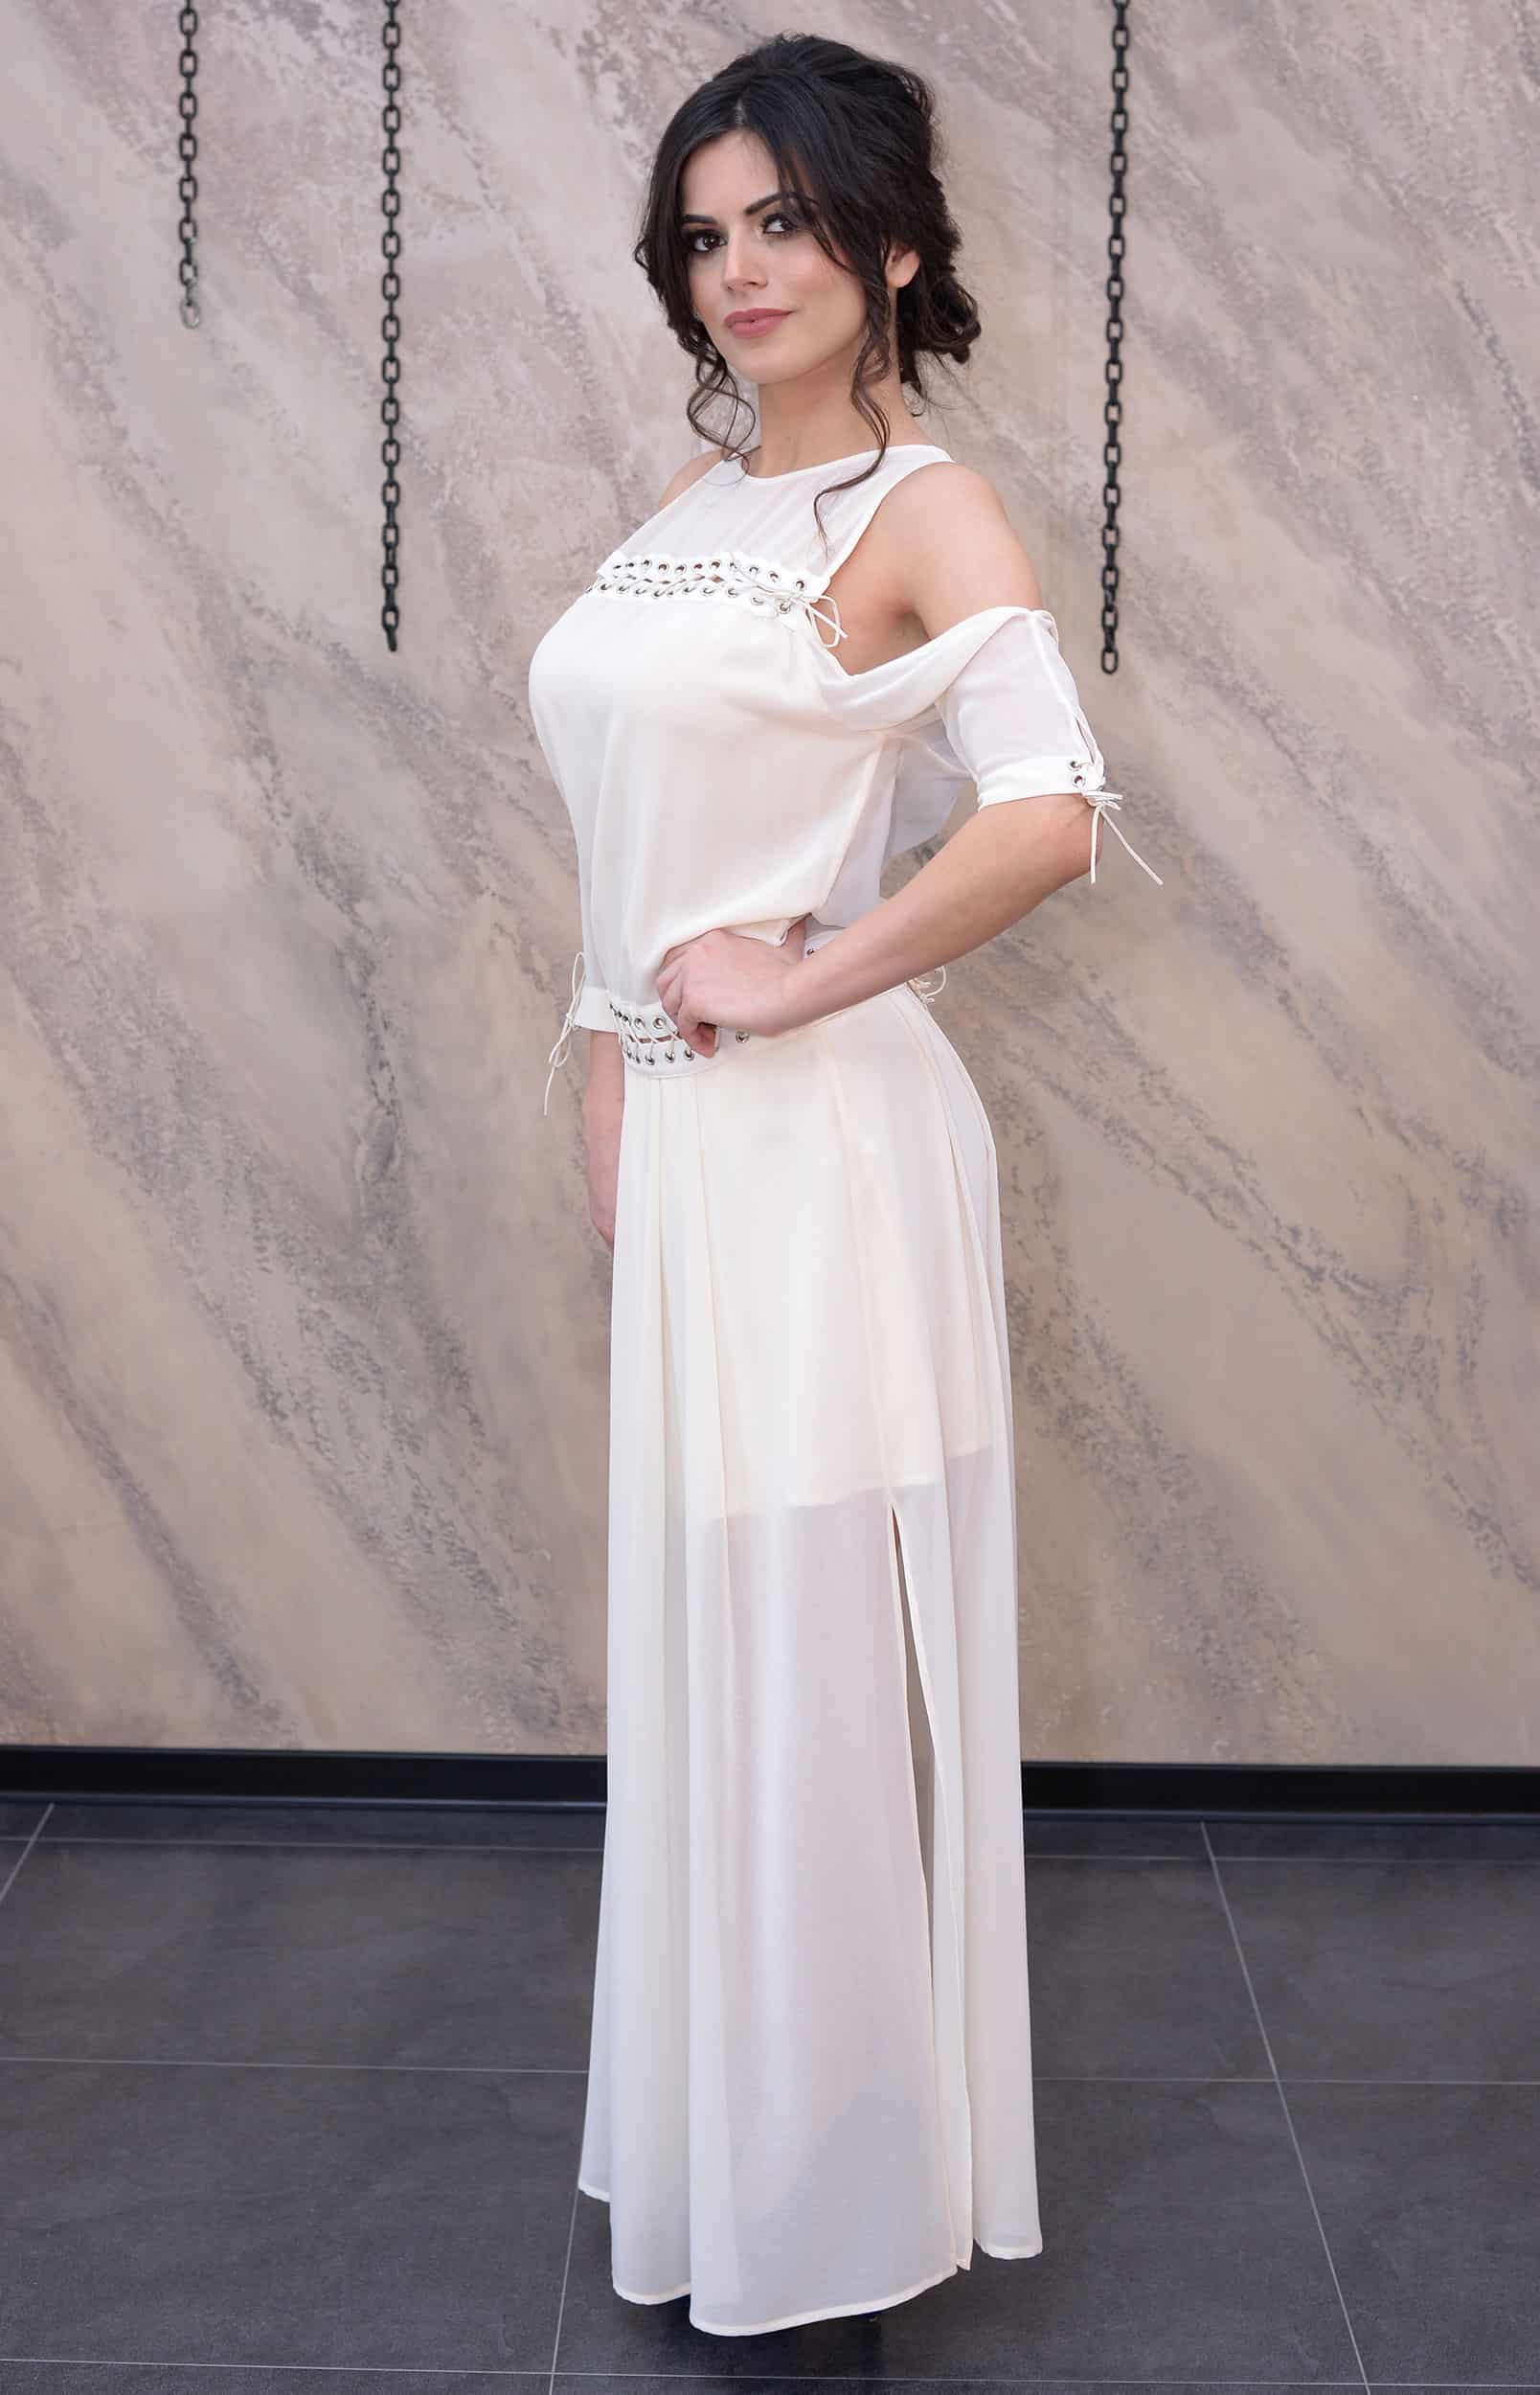 Iznajmljivanje haljina Nis - Suzana Peric - Rent A Dress Nis